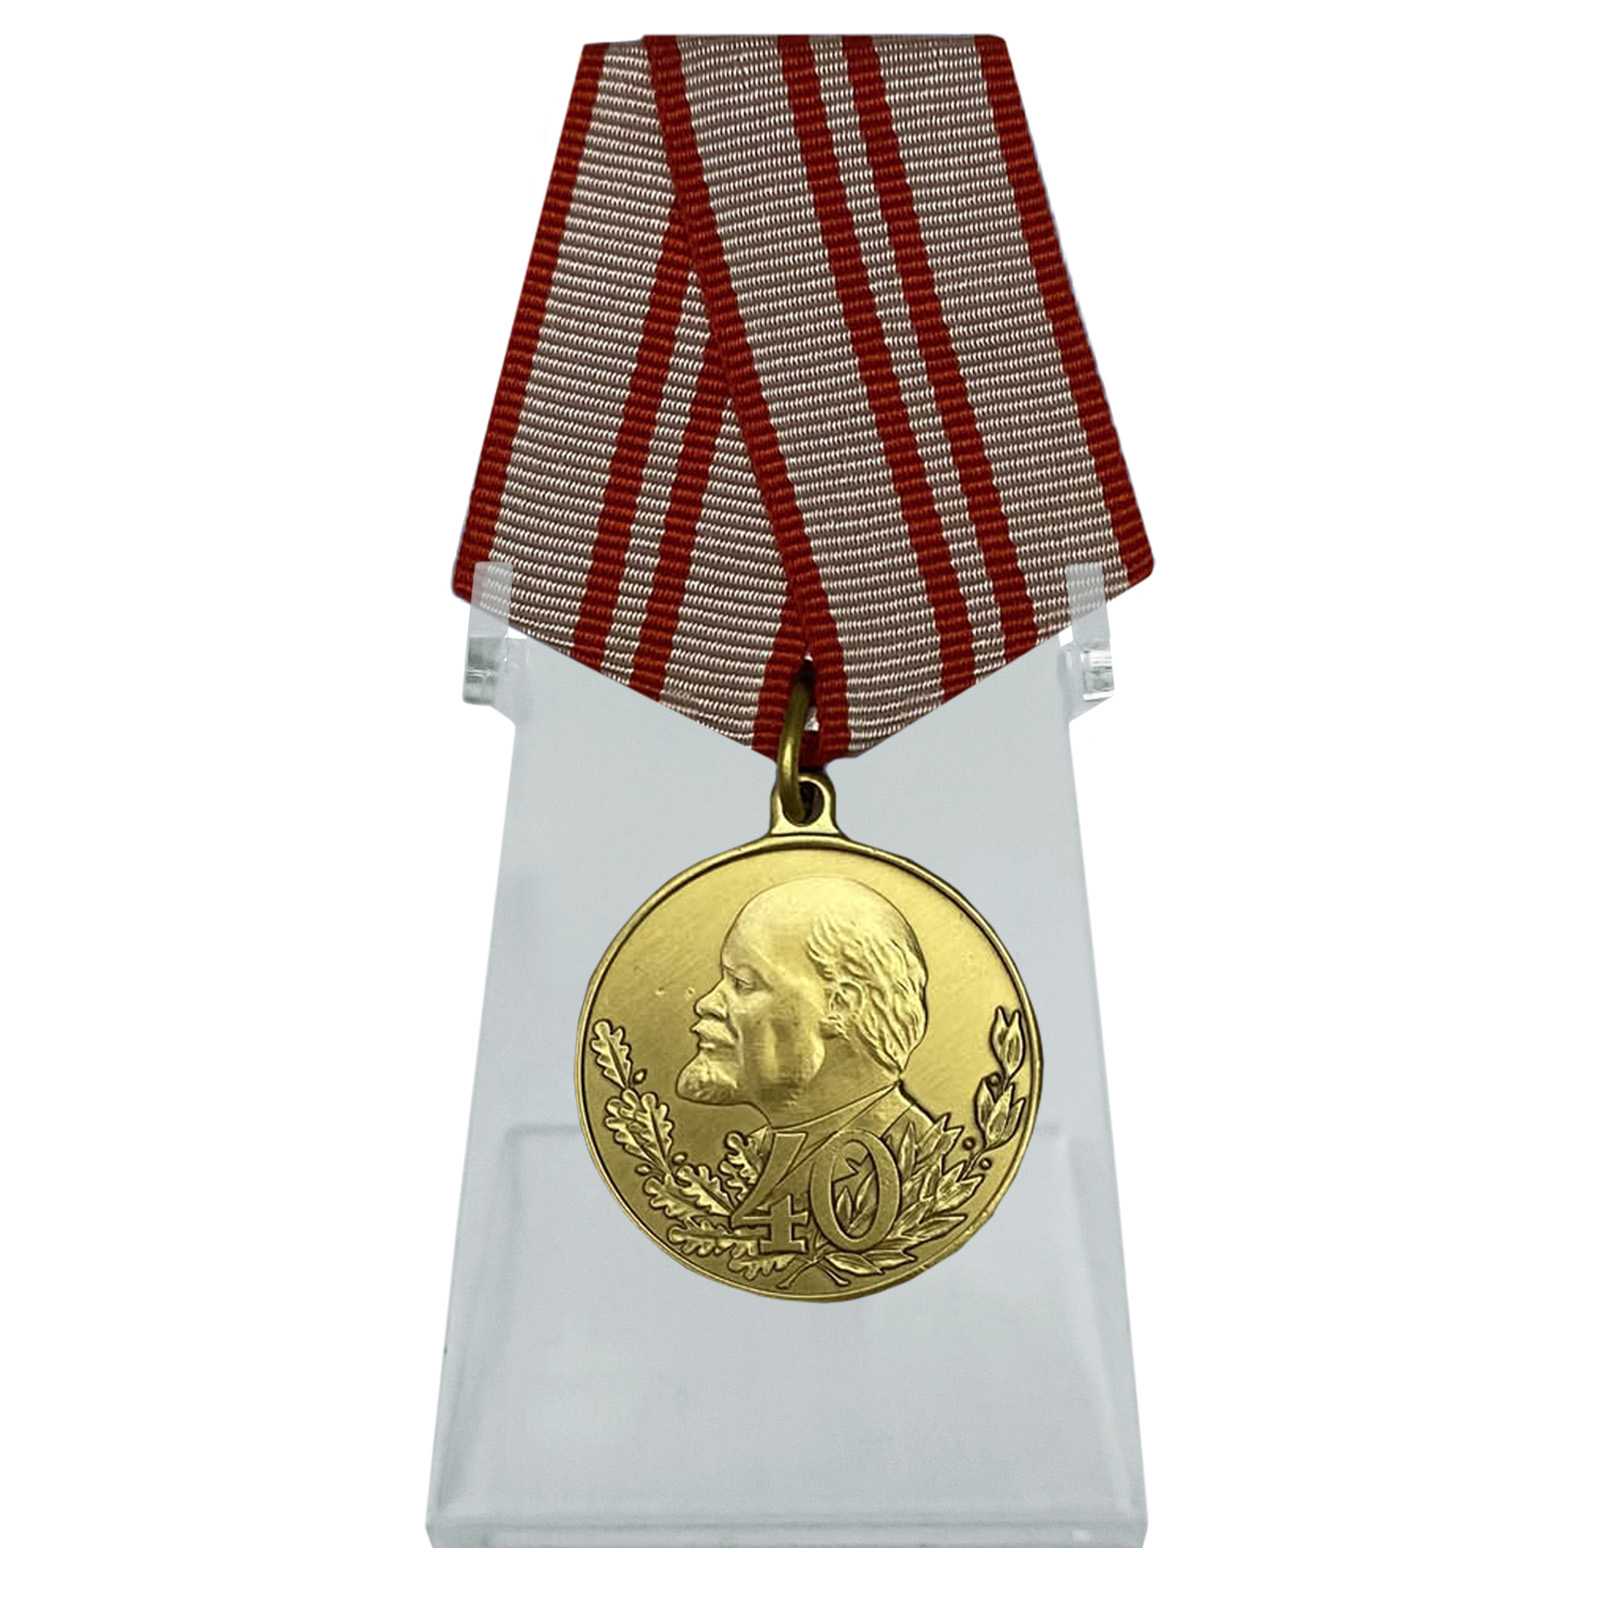 Юбилейная медаль "40 лет Вооружённых Сил СССР" на подставке